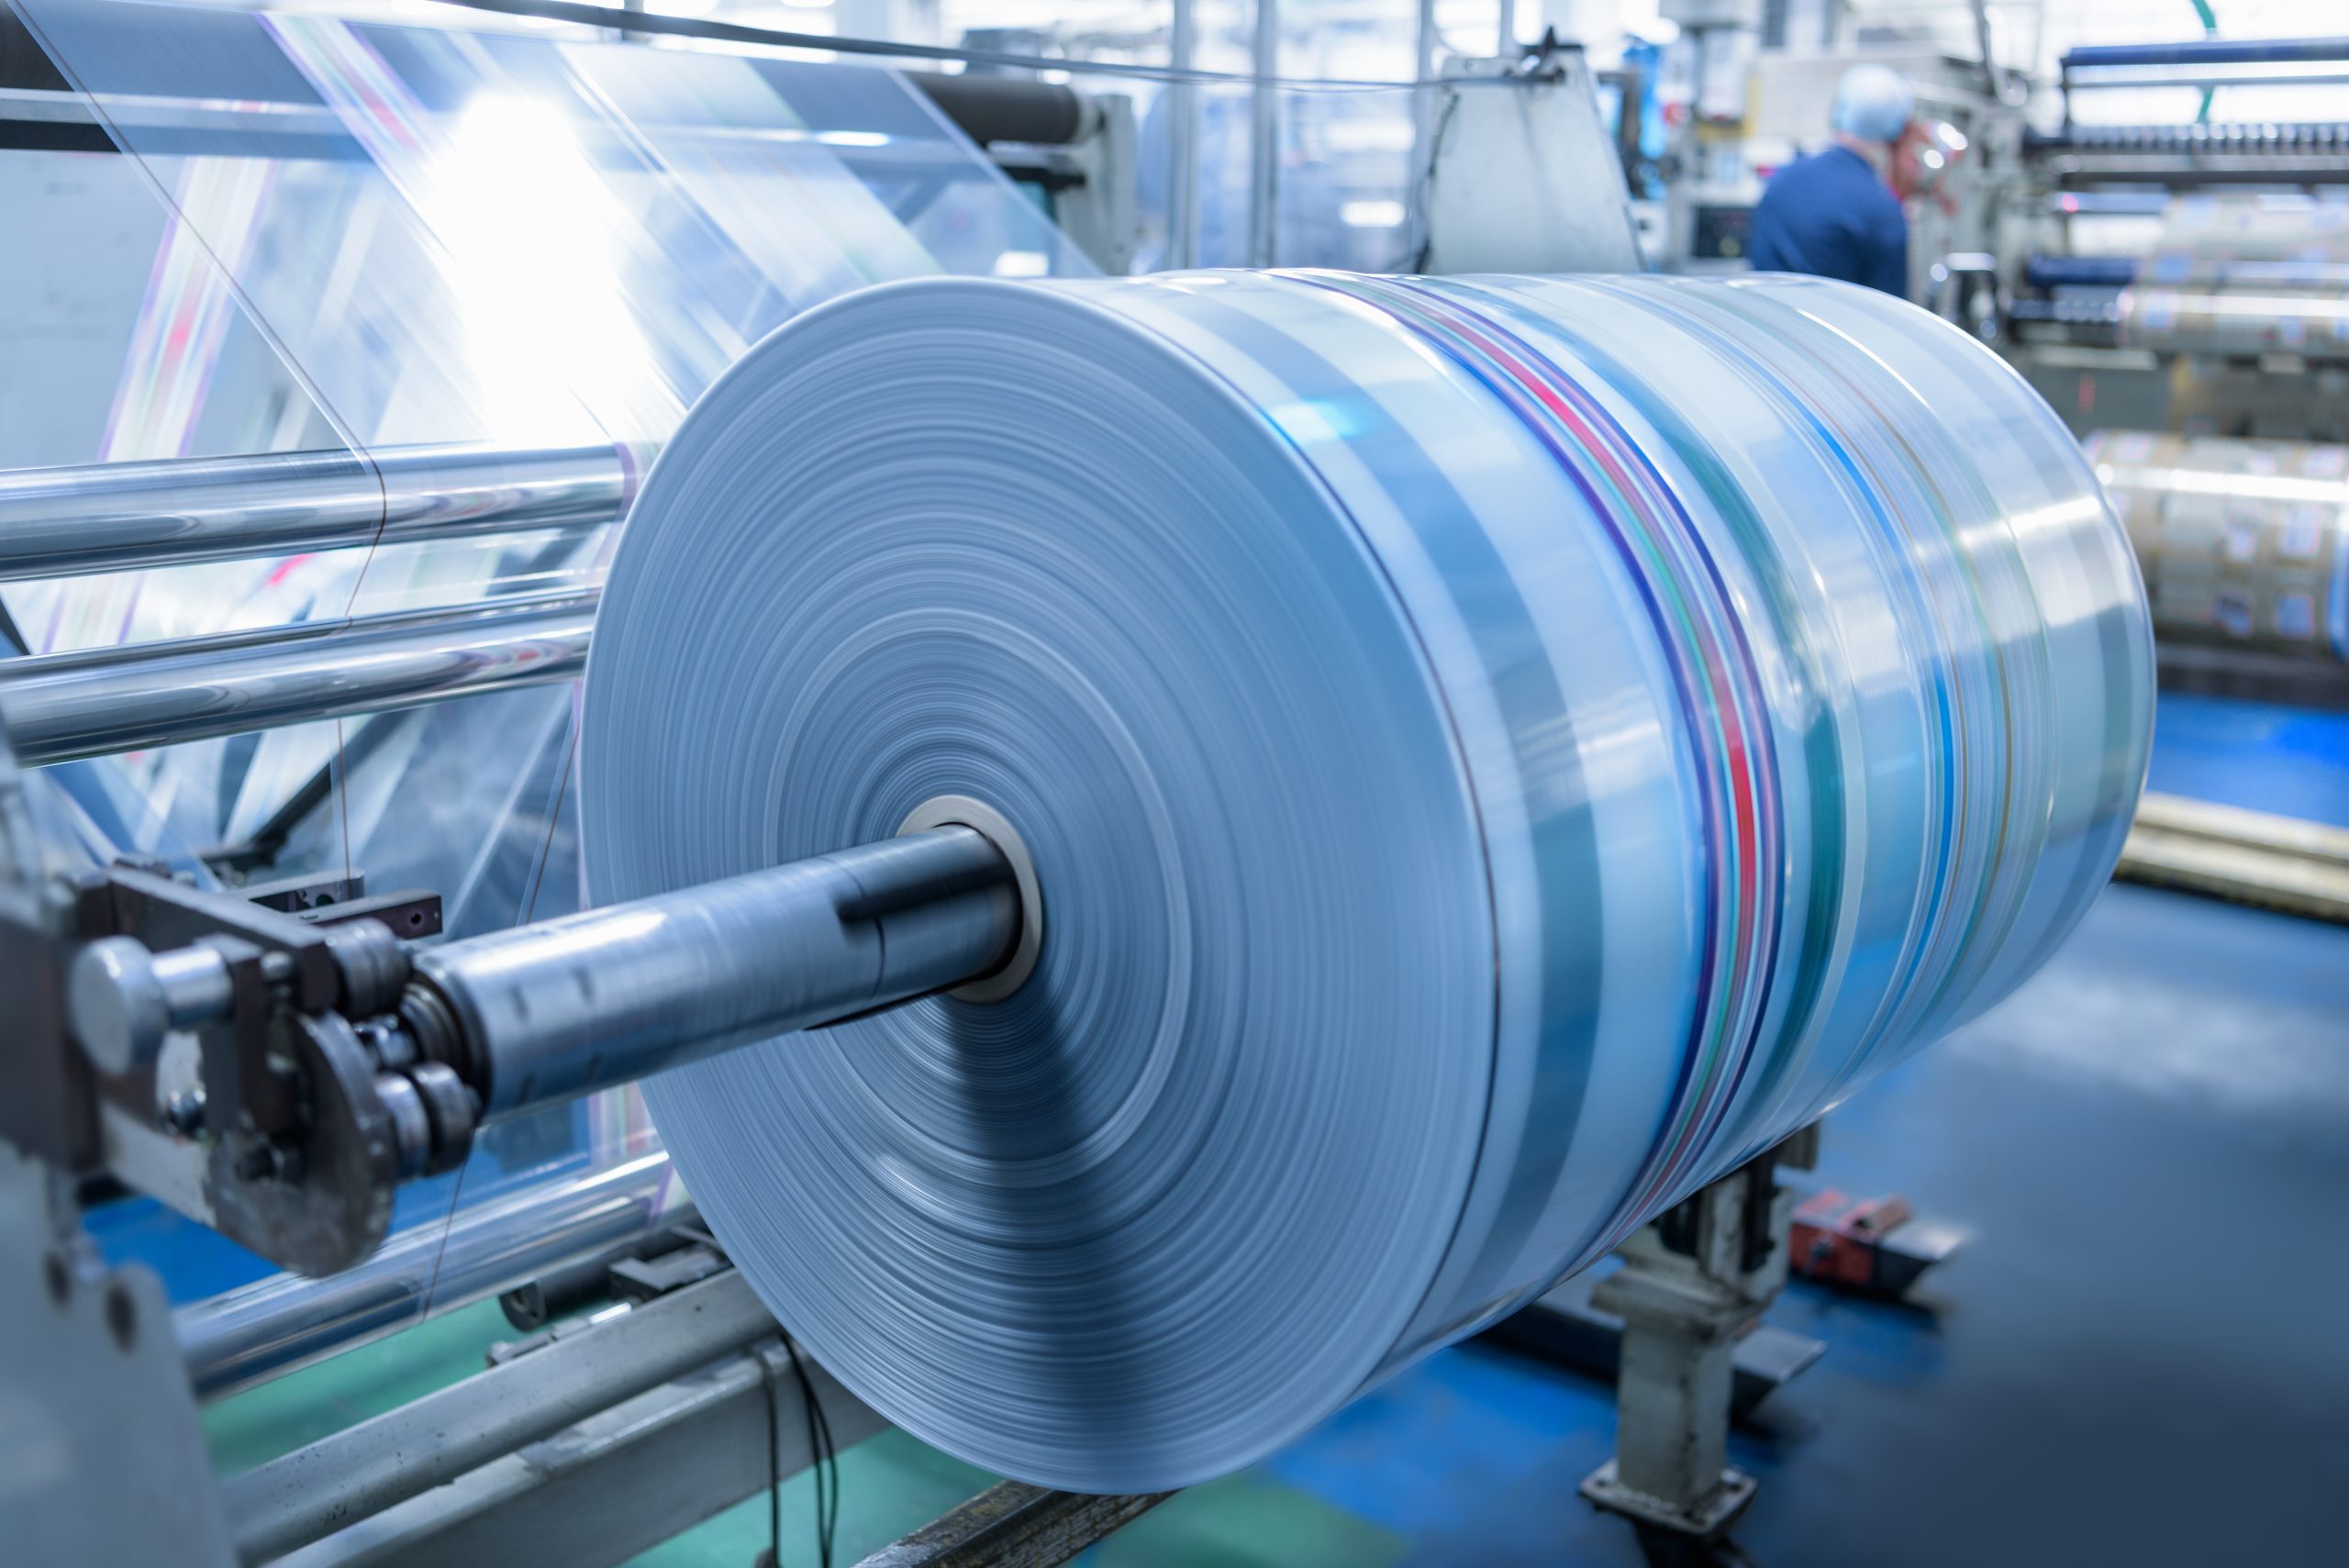 Spinning roll of printed packaging in food packaging printing factory